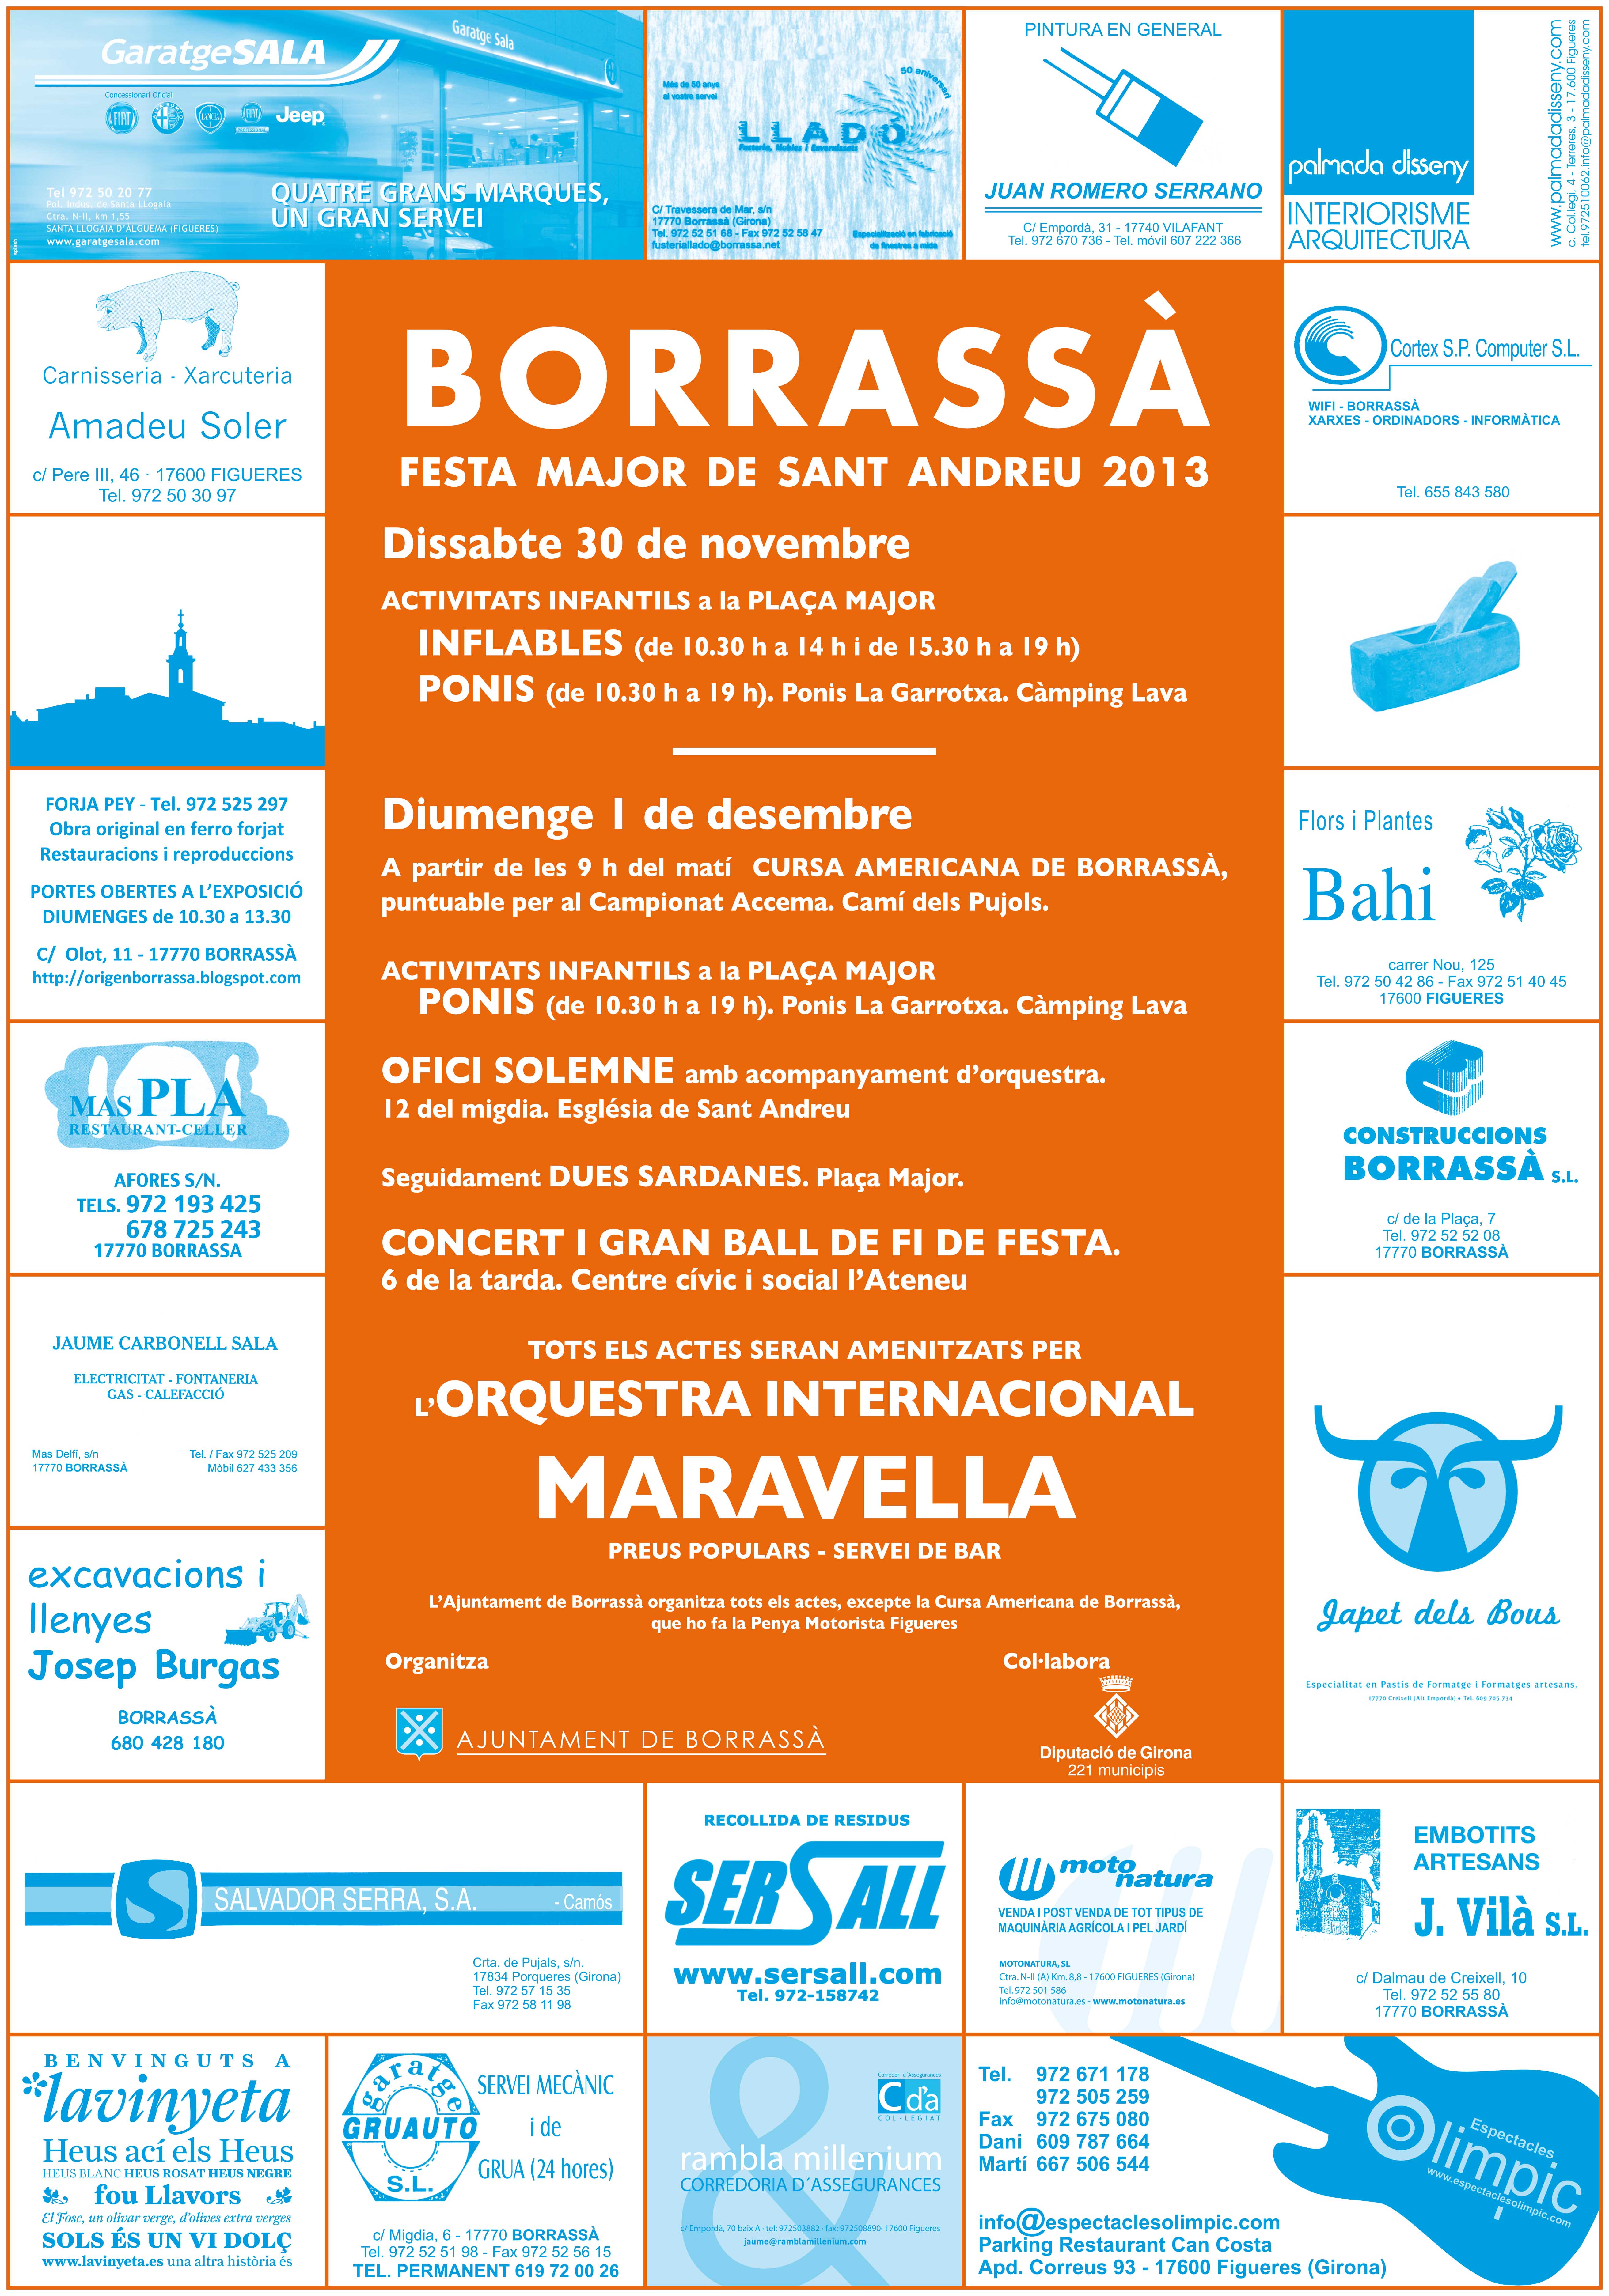 Borrassà ja es prepara per celebrar la festa Major en honor de Sant Andreu els dies 30 de novembre i 1 de desembre. Hi actuarà l'Orquestra Internacional Maravella.